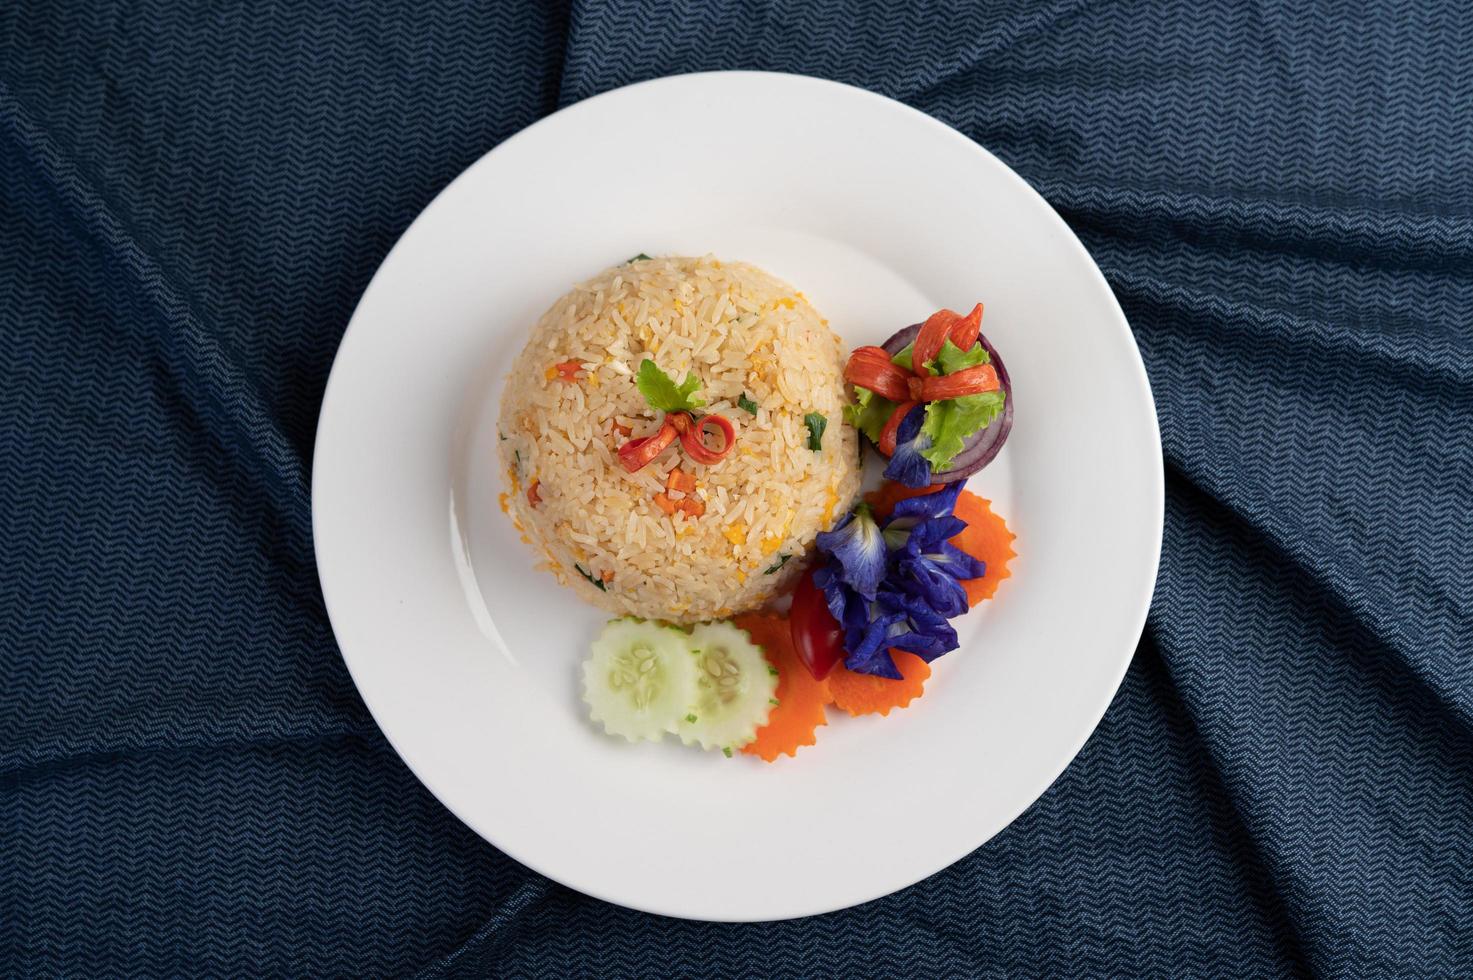 äggstekt ris på en vit platta med skrynkligt tyg foto